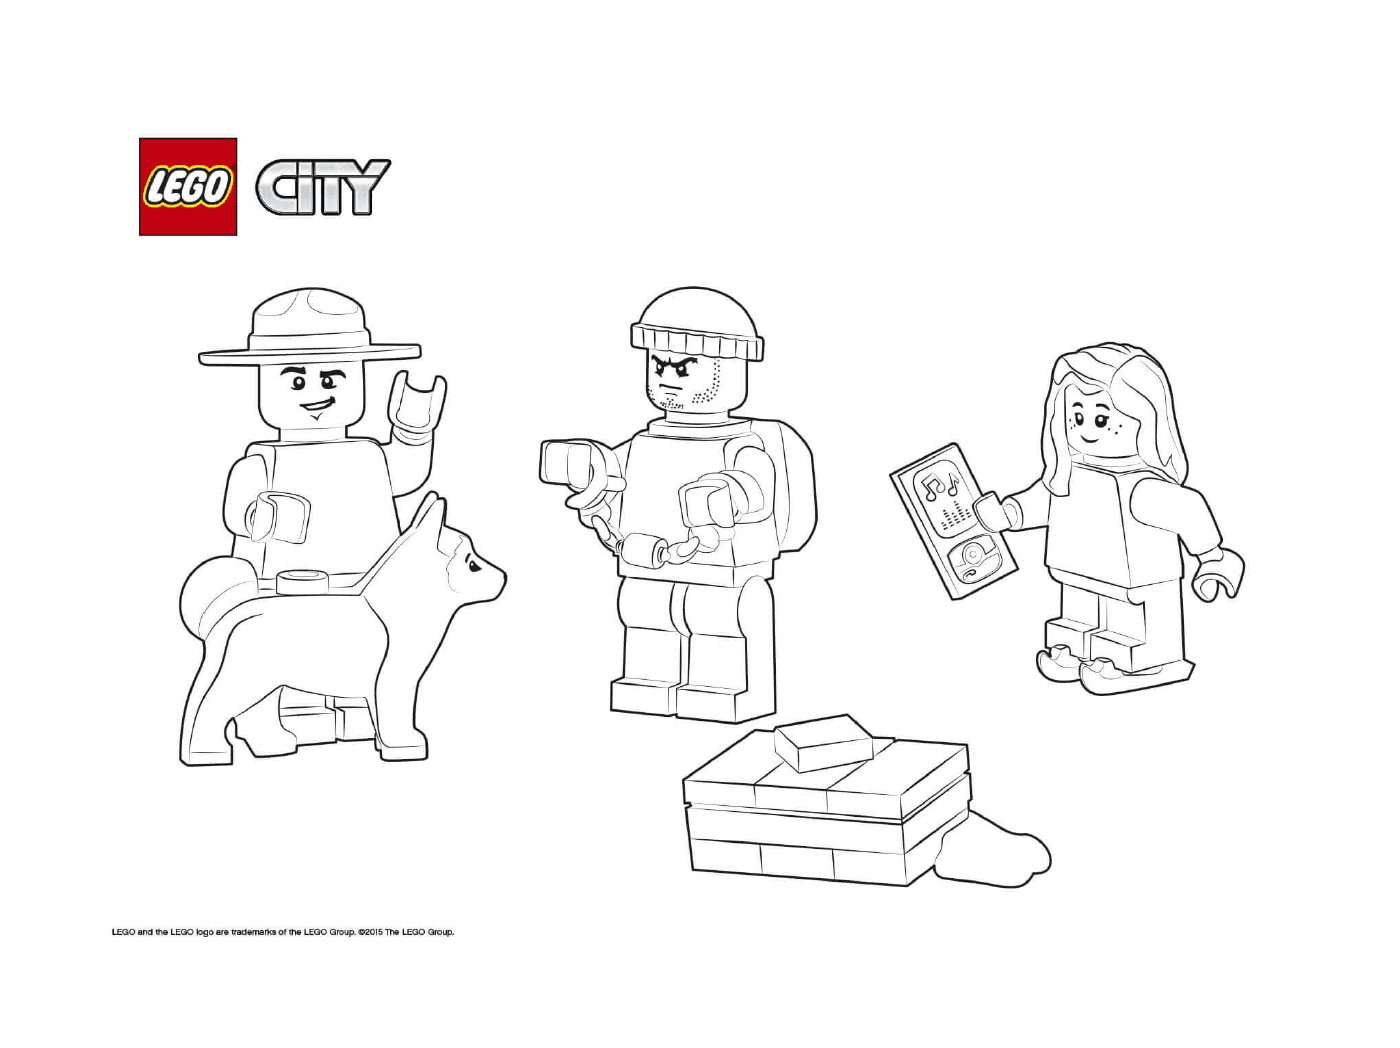  Cherif Lego Cidade e prisioneiro 